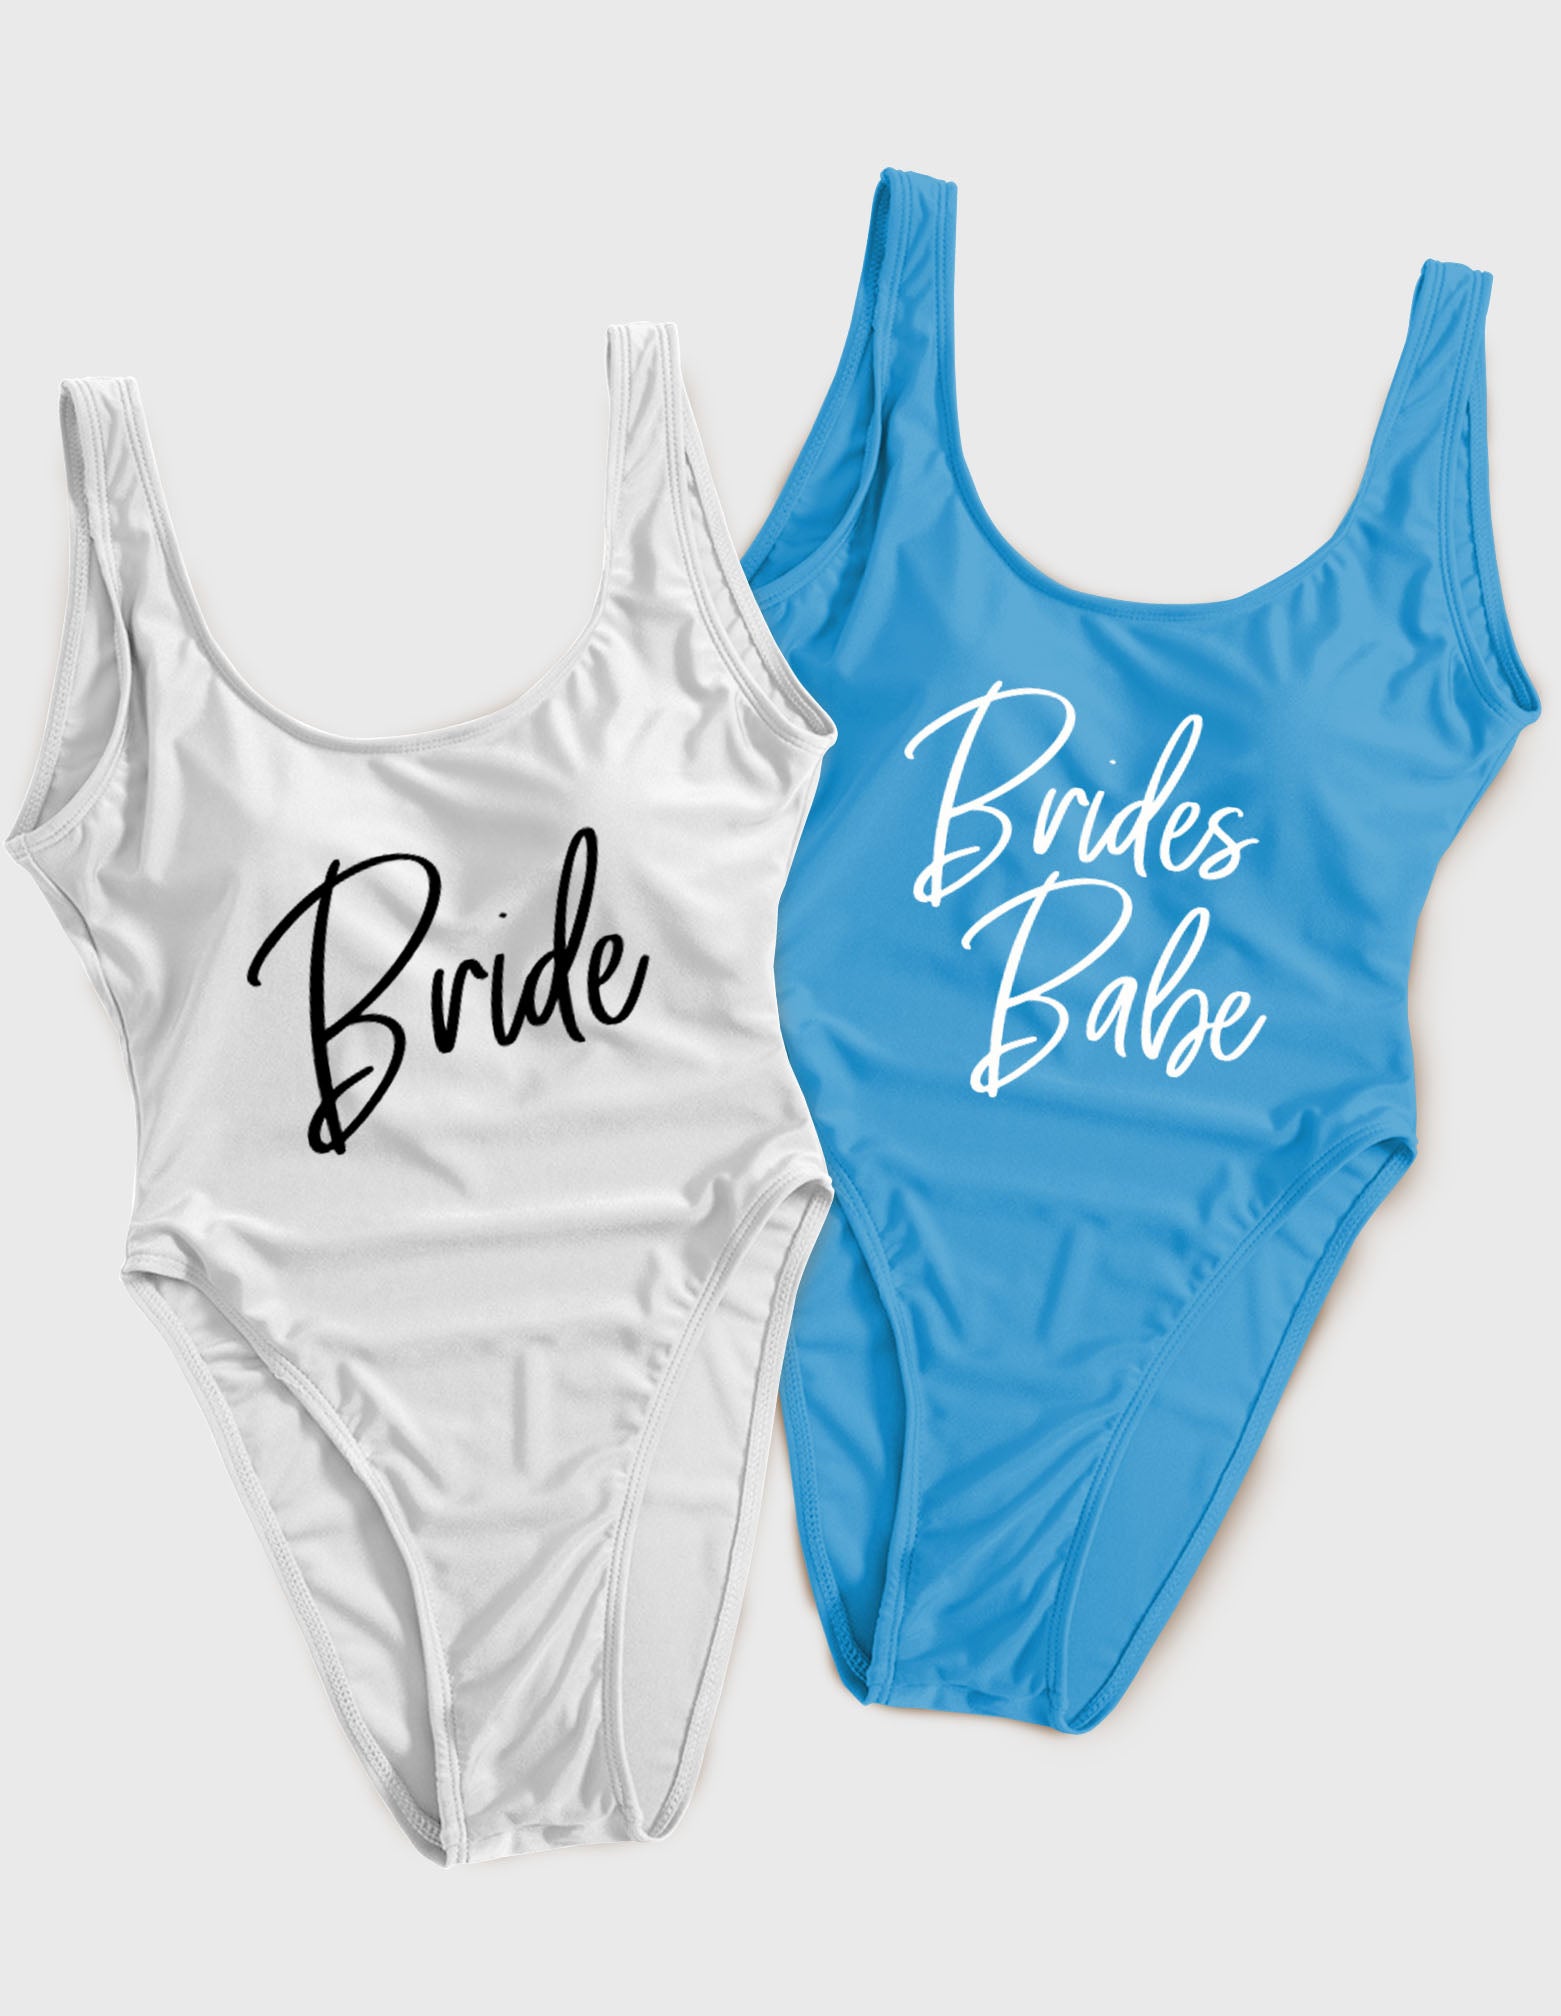 Bride & Brides Babe Bachelorette Swimsuit